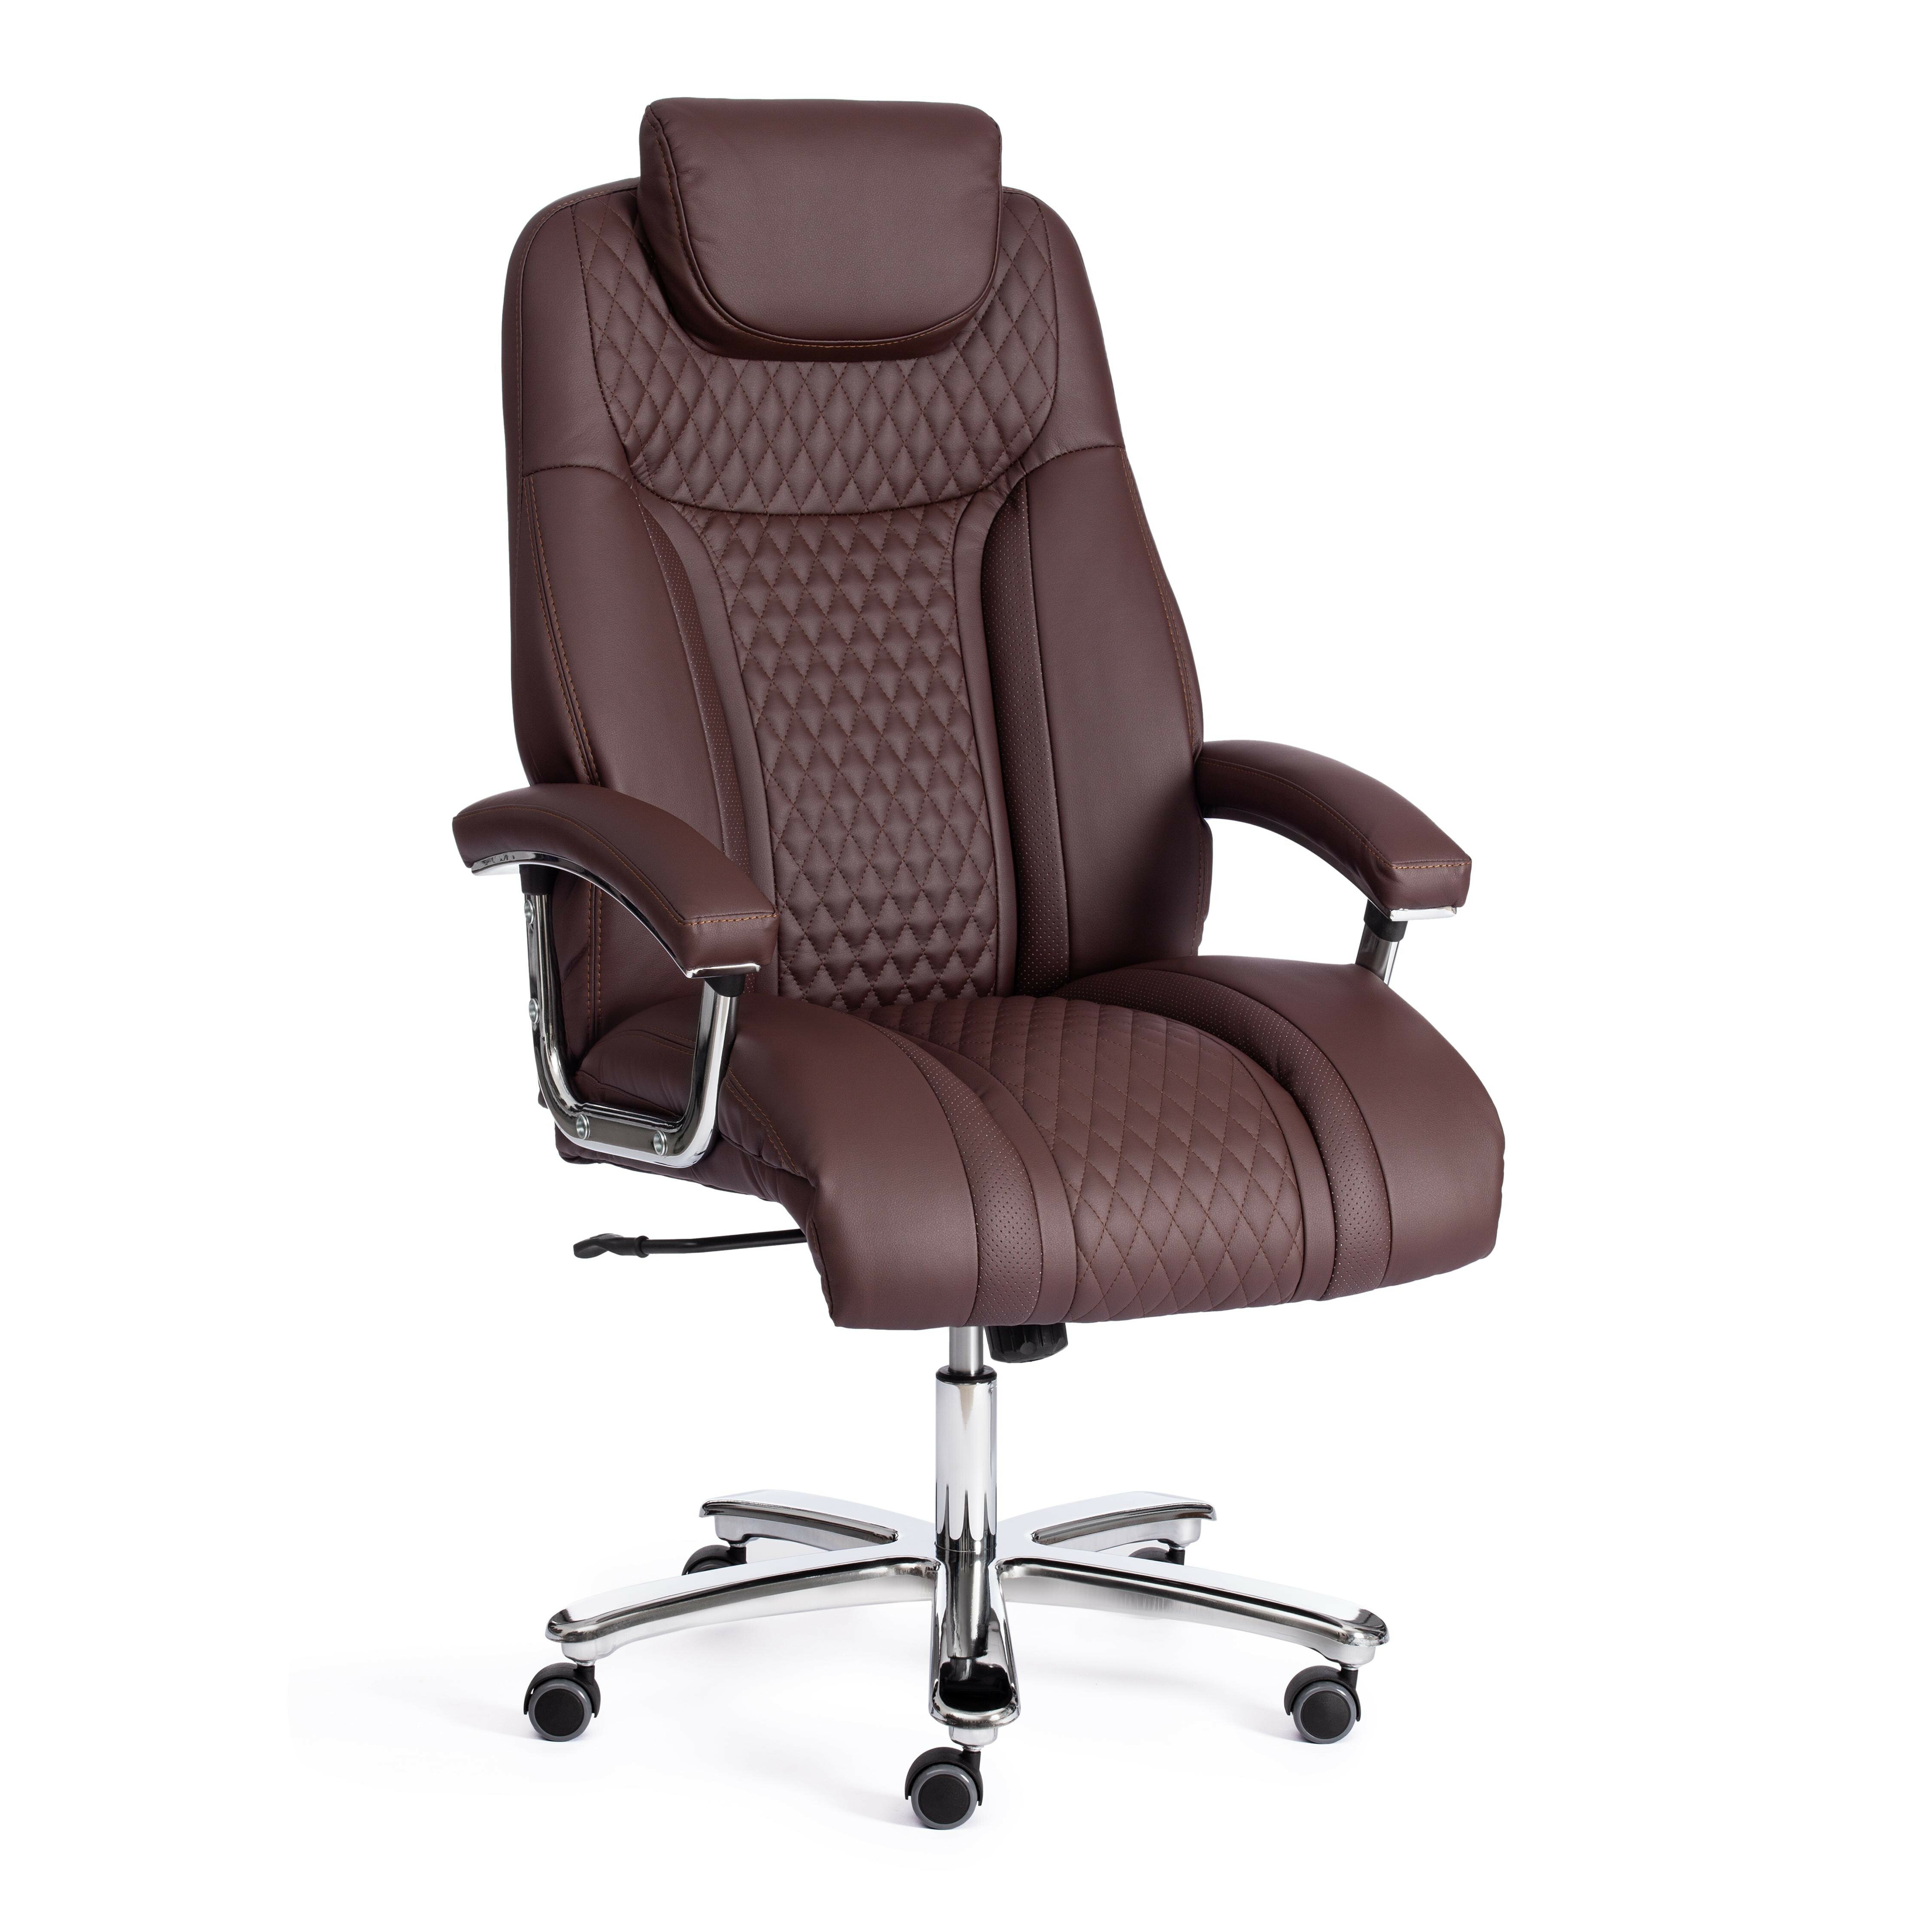 Компьютерное кресло TetChair Trust (max) кож/зам, коричневый/коричневый стеганный/коричневый, 36-36/36-36/6/36-36/06